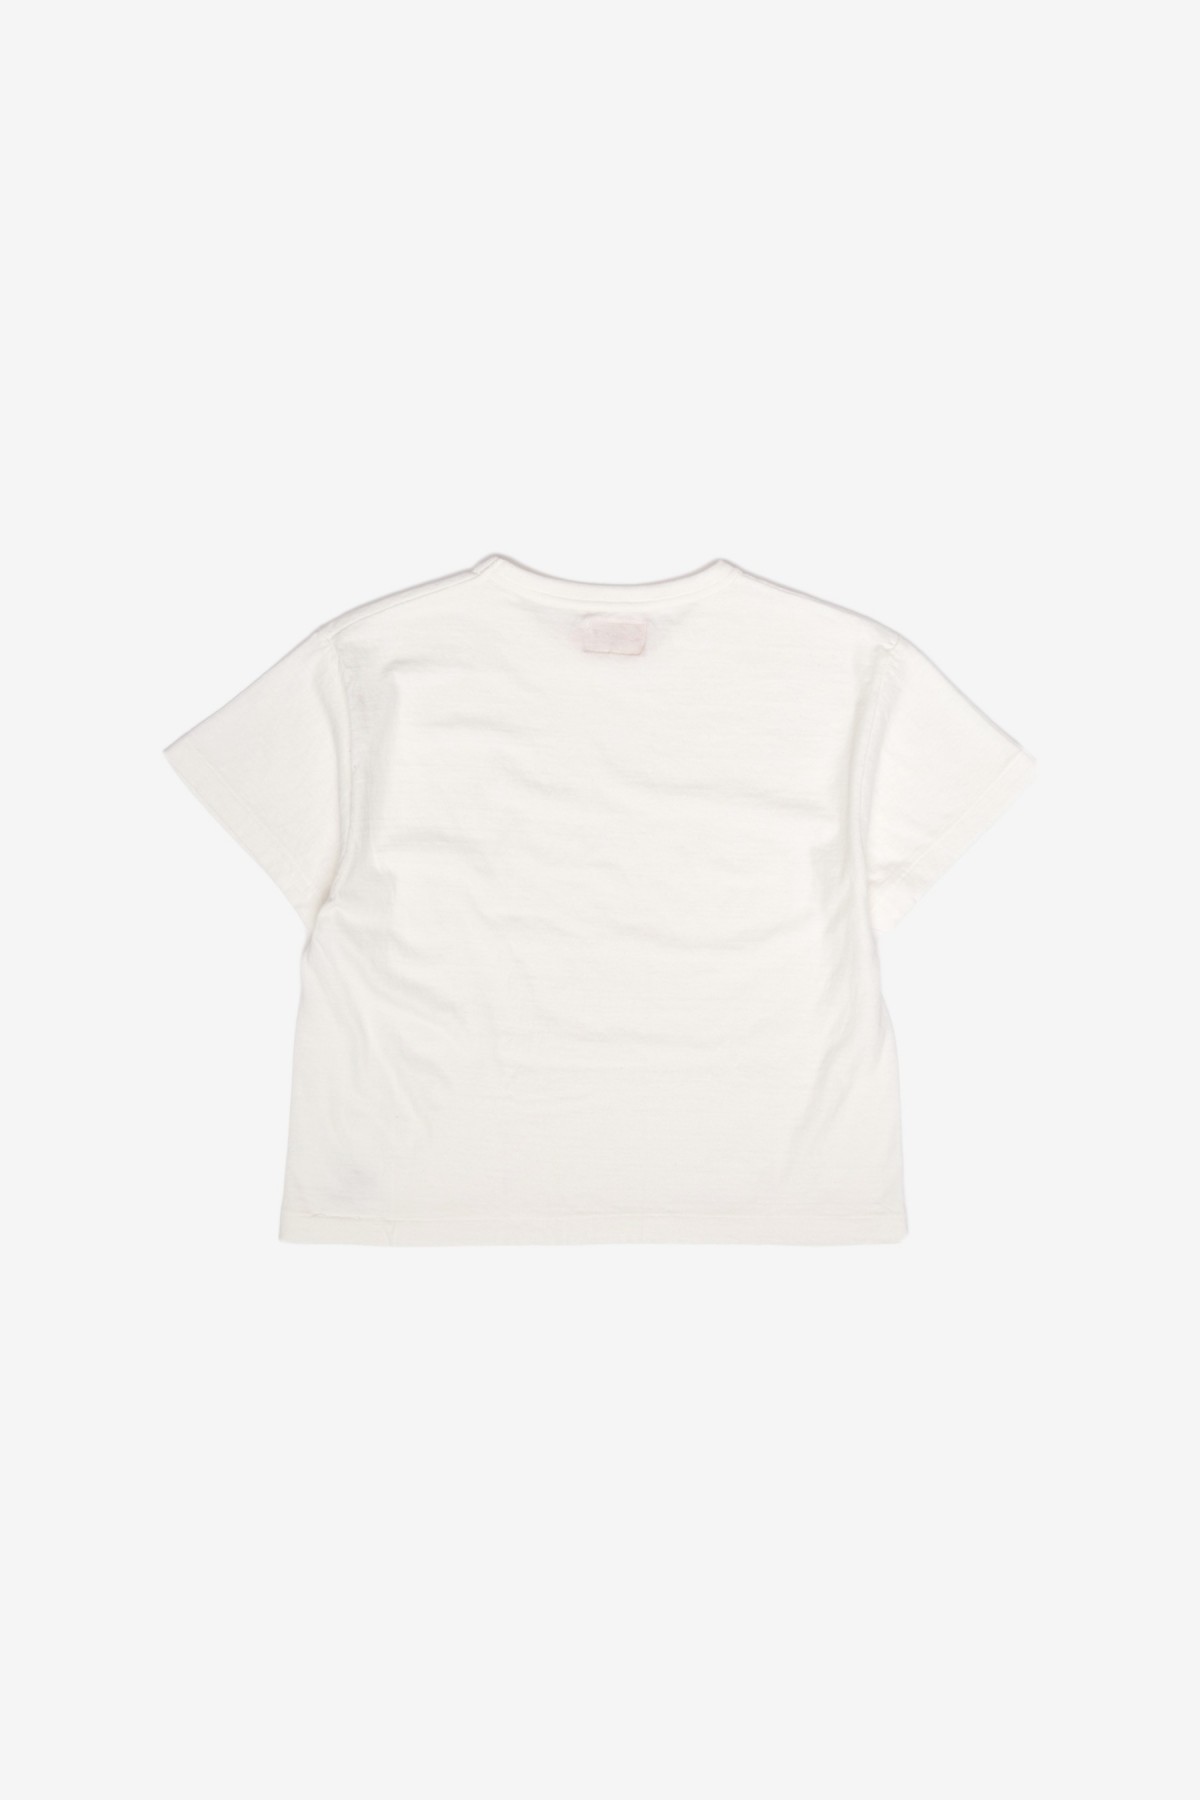 Sunray Sportswear Hi'Aka Short Sleeve T-Shirt in Off White